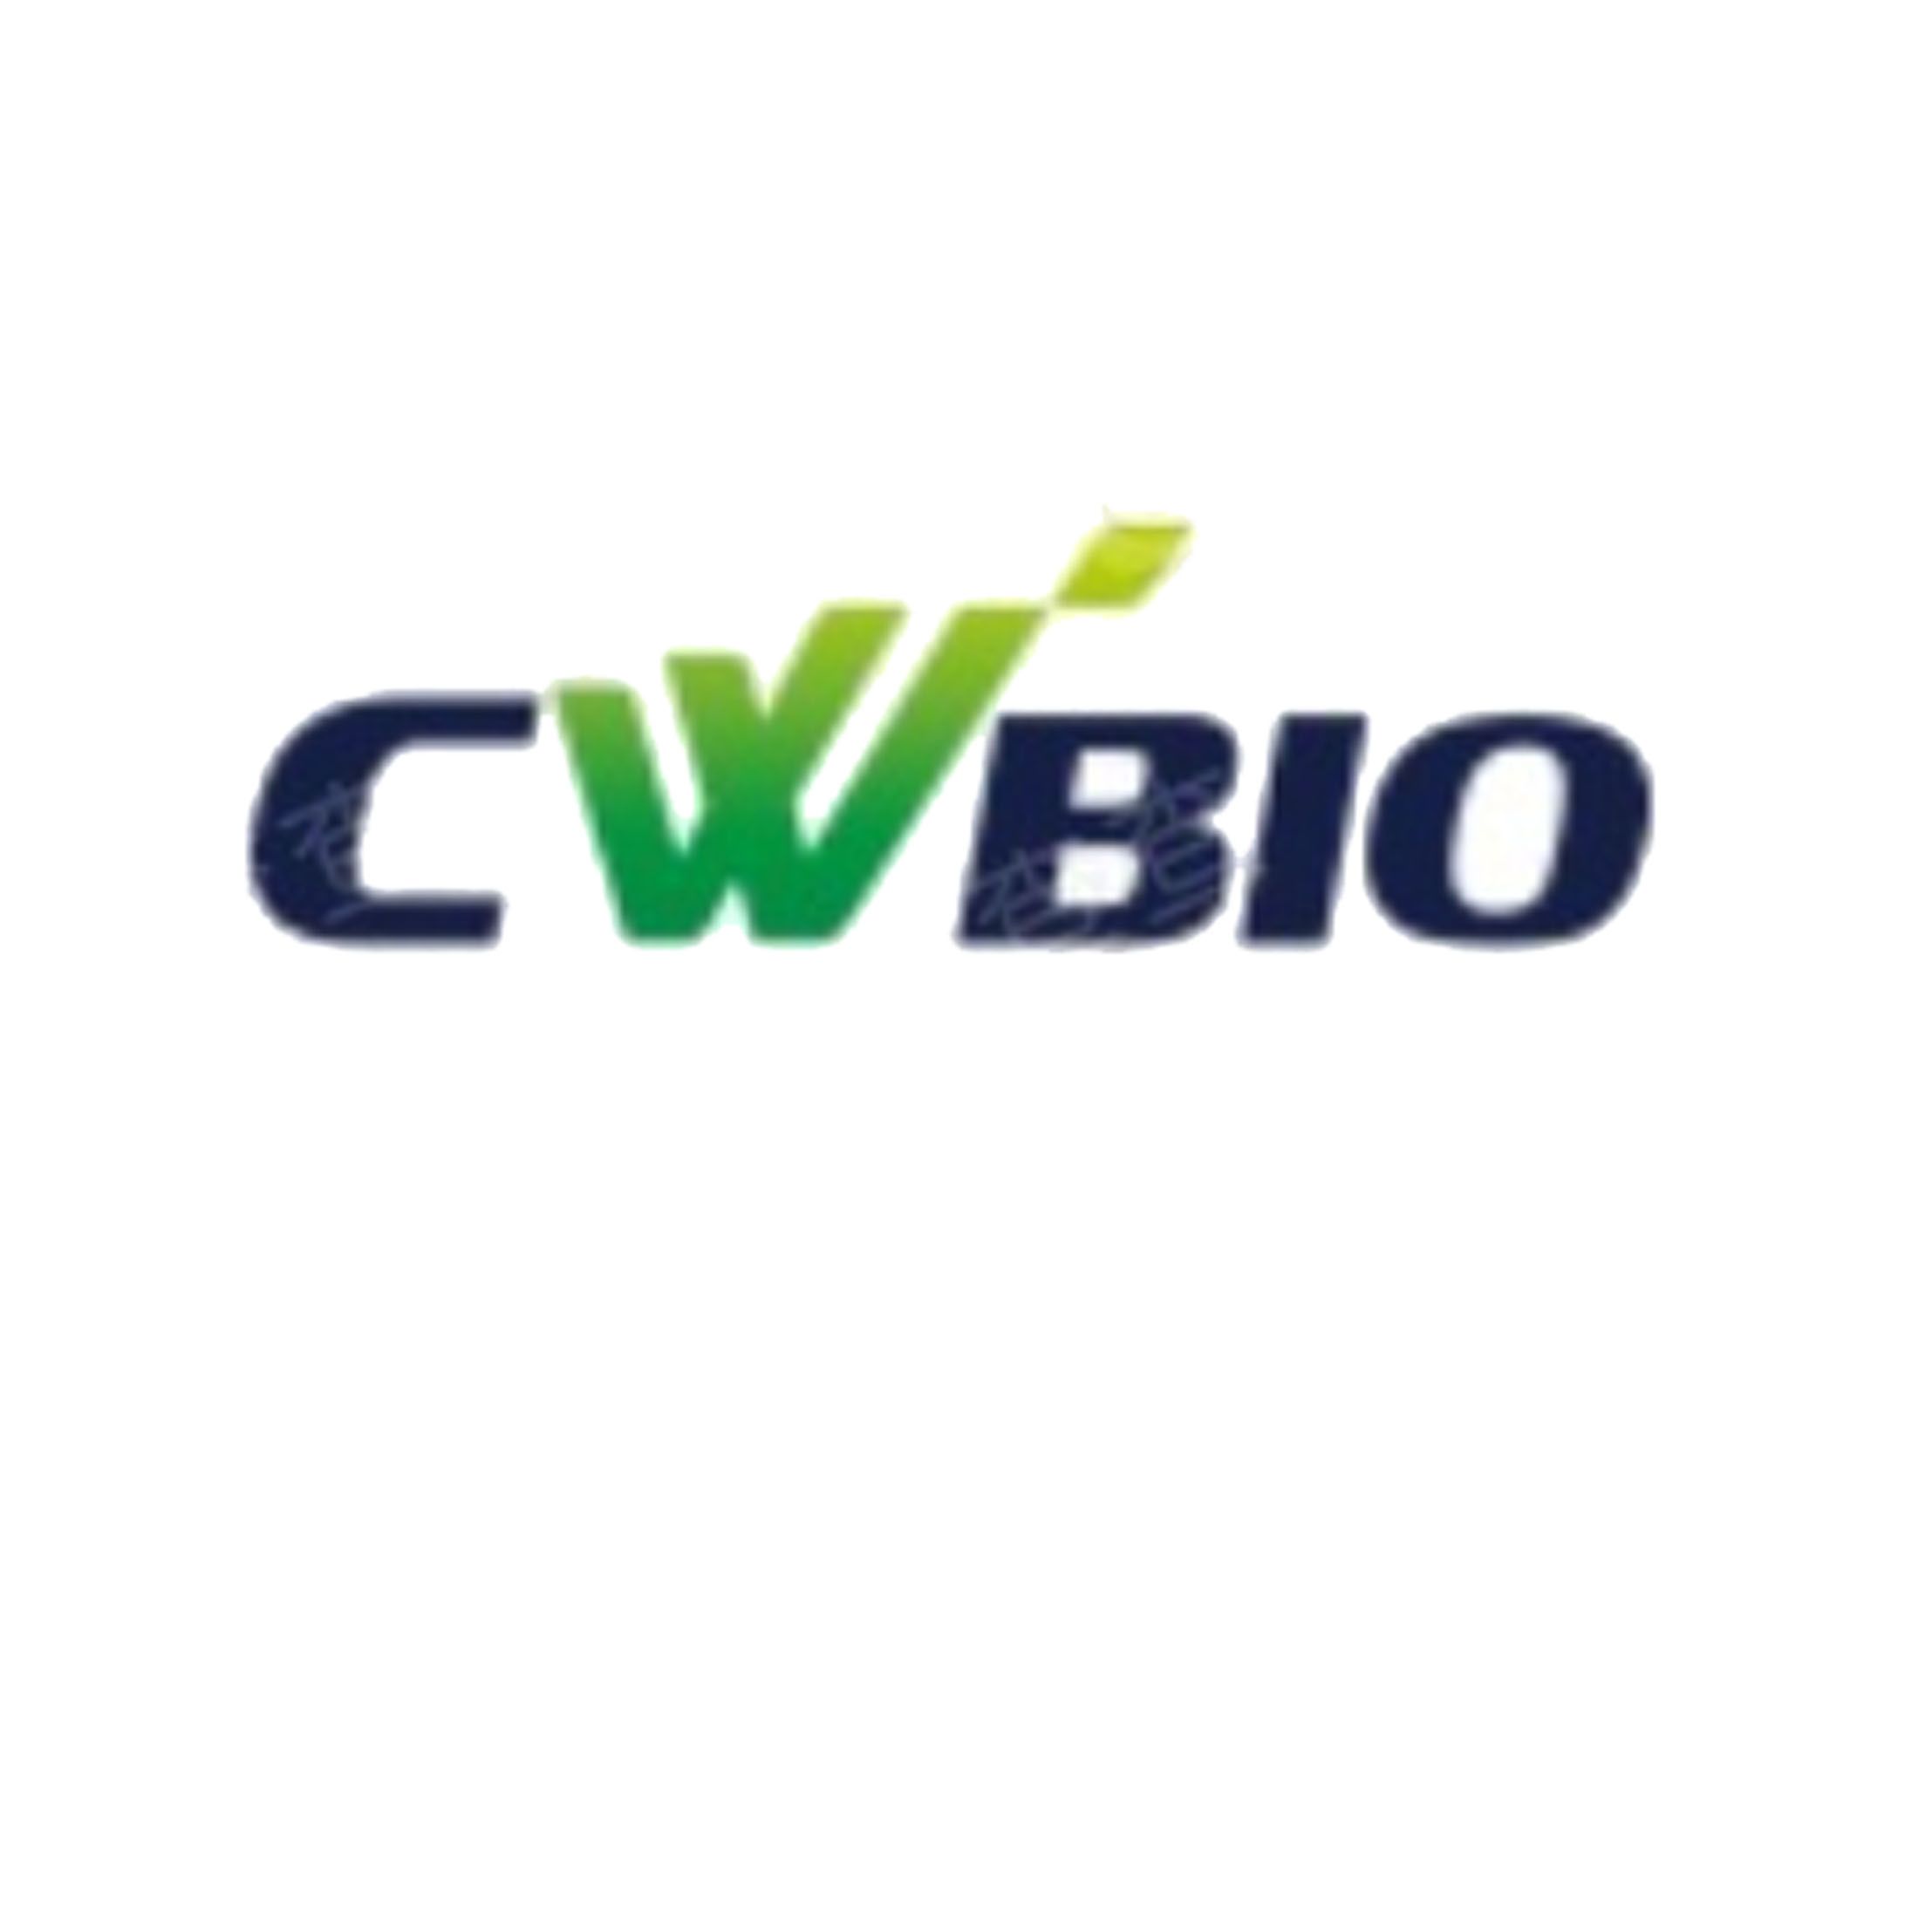 Cwbiotech核酸提取试剂盒、磁珠法核酸提取试剂盒、PCR及荧光定量PCR试剂、二代测序建库试剂，现货